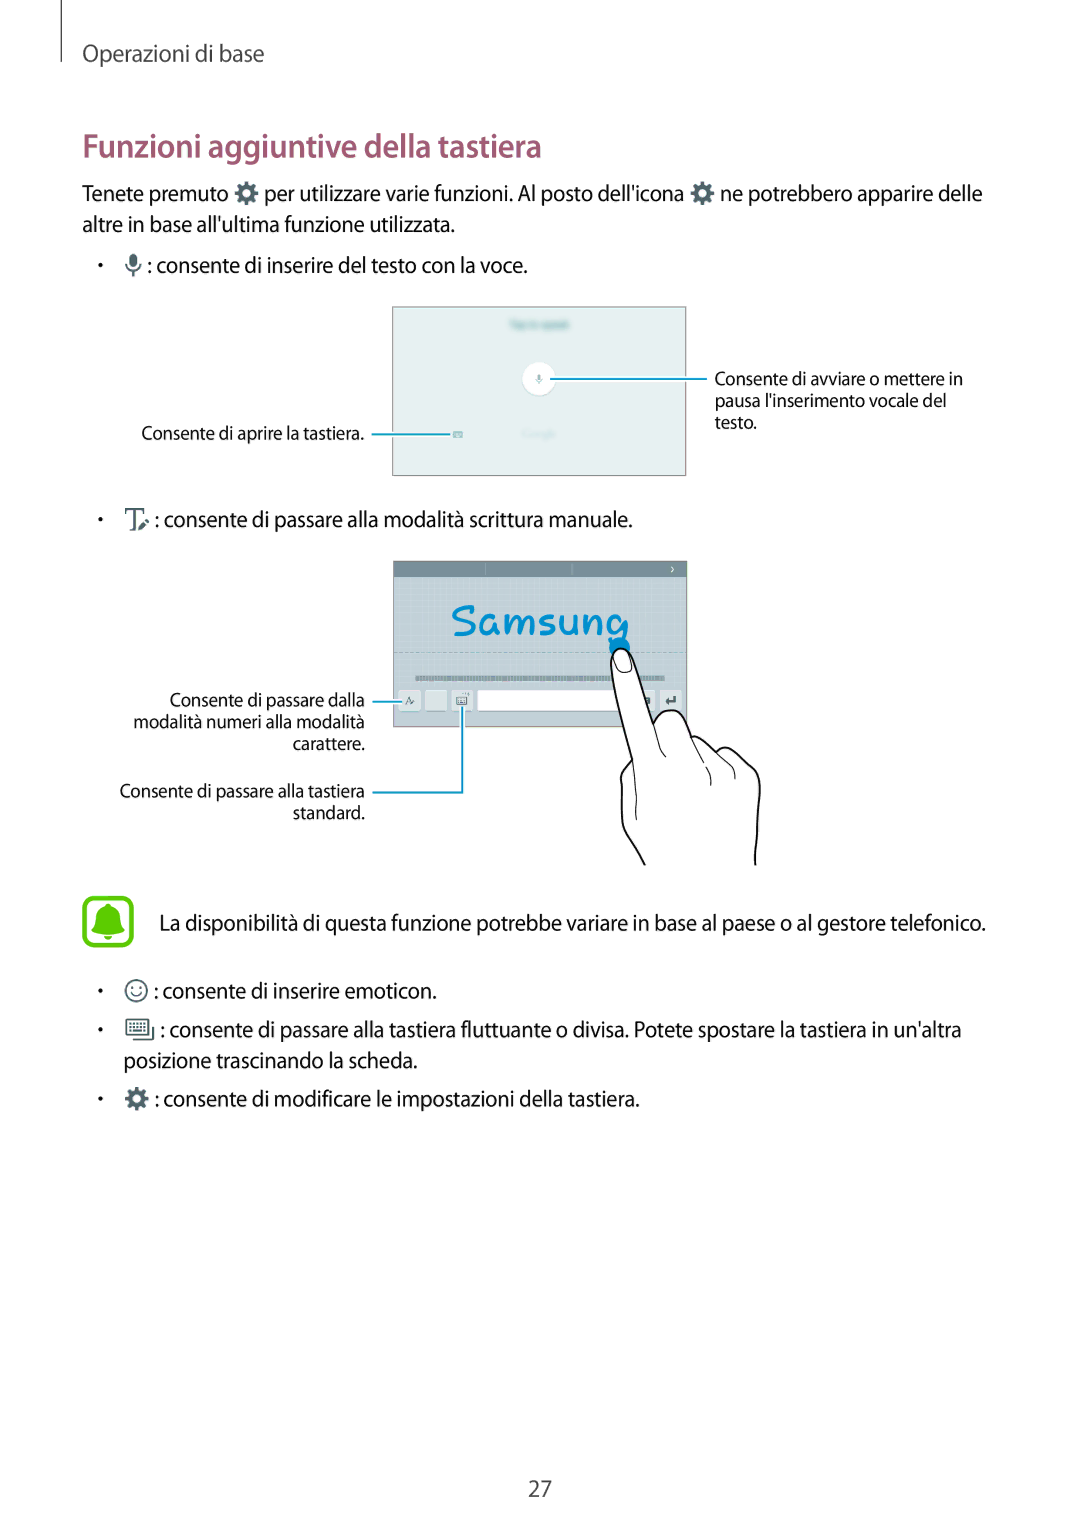 Samsung SM-T285NZKAITV manual Funzioni aggiuntive della tastiera, Consente di inserire del testo con la voce 